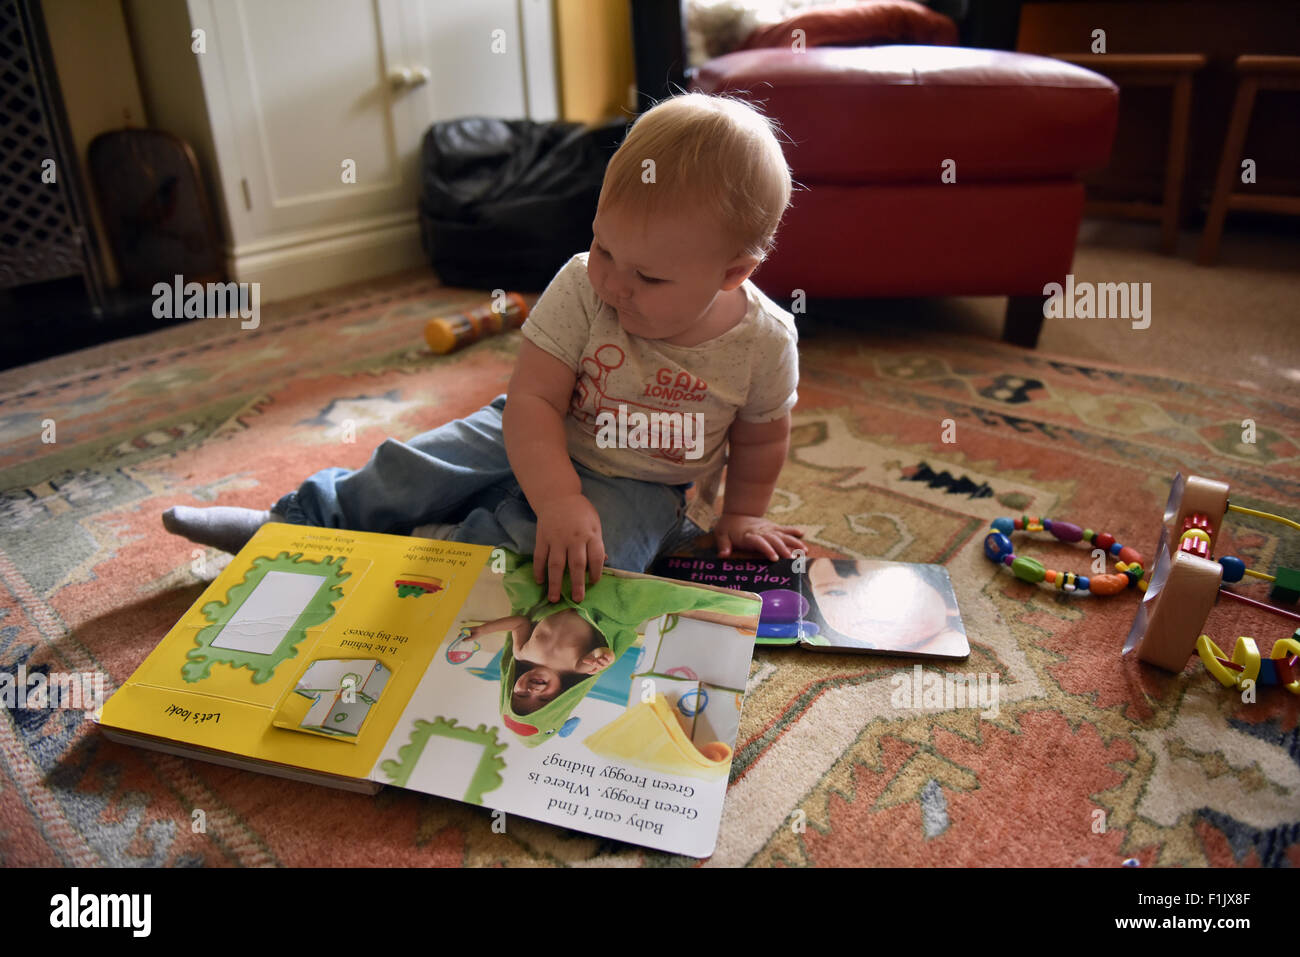 Einjähriges Kind Blick auf eine frühe Jahre Buch sitzt auf einem Teppich auf den Ausschnitt Segmenten ziehen unterschiedliche Sounds zu aktivieren Stockfoto